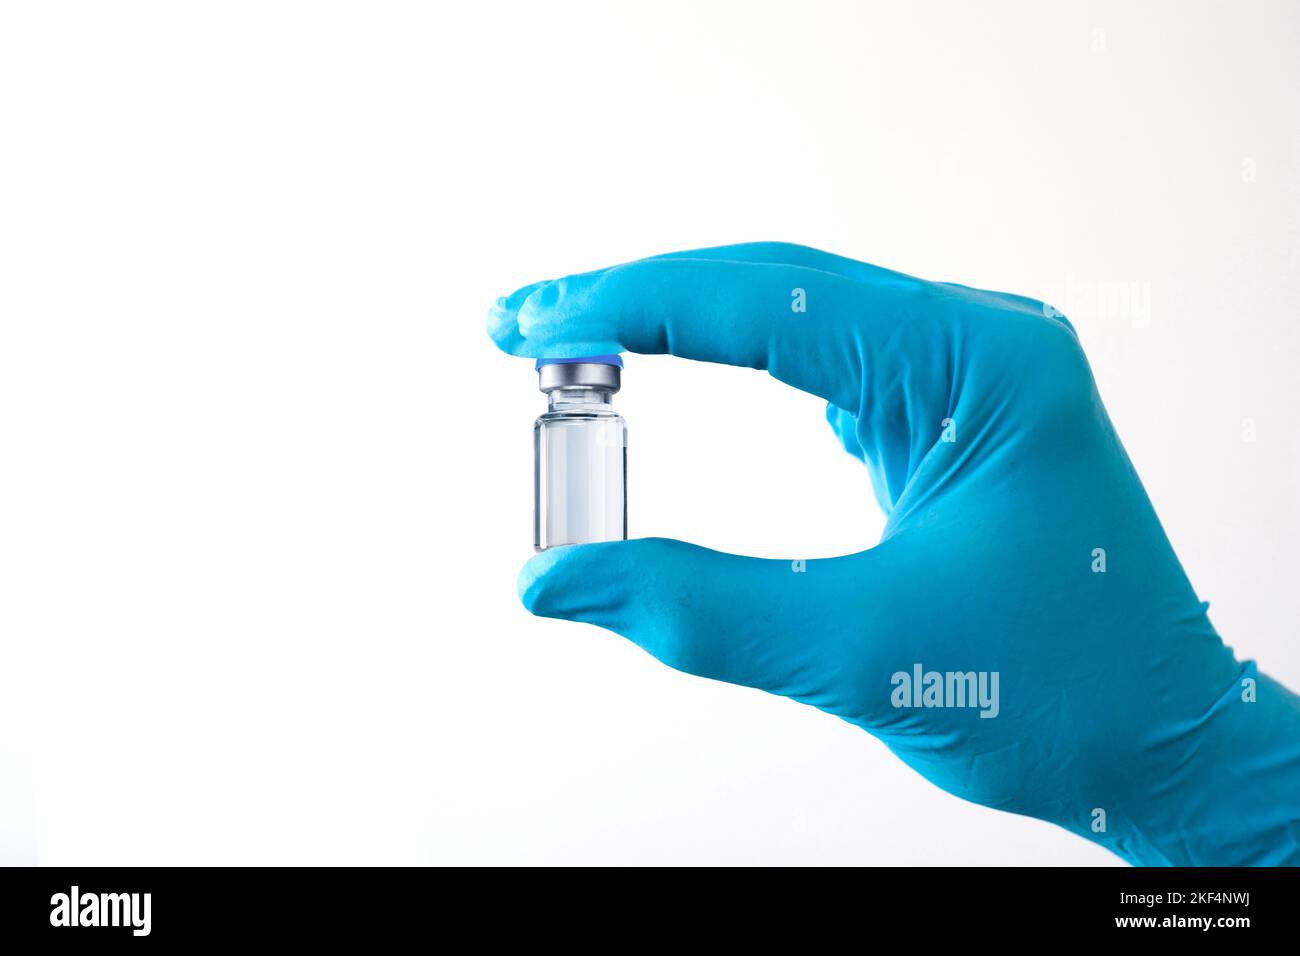 Eine Hand hält ein Glas mit Impfstoff,  Covid-19, Corona, Impfen, Impfdosis, BionTech, Pfizer, AstraZeneca, Novavax, Virus, Mutante, Affenvirus, Coron Stock Photo